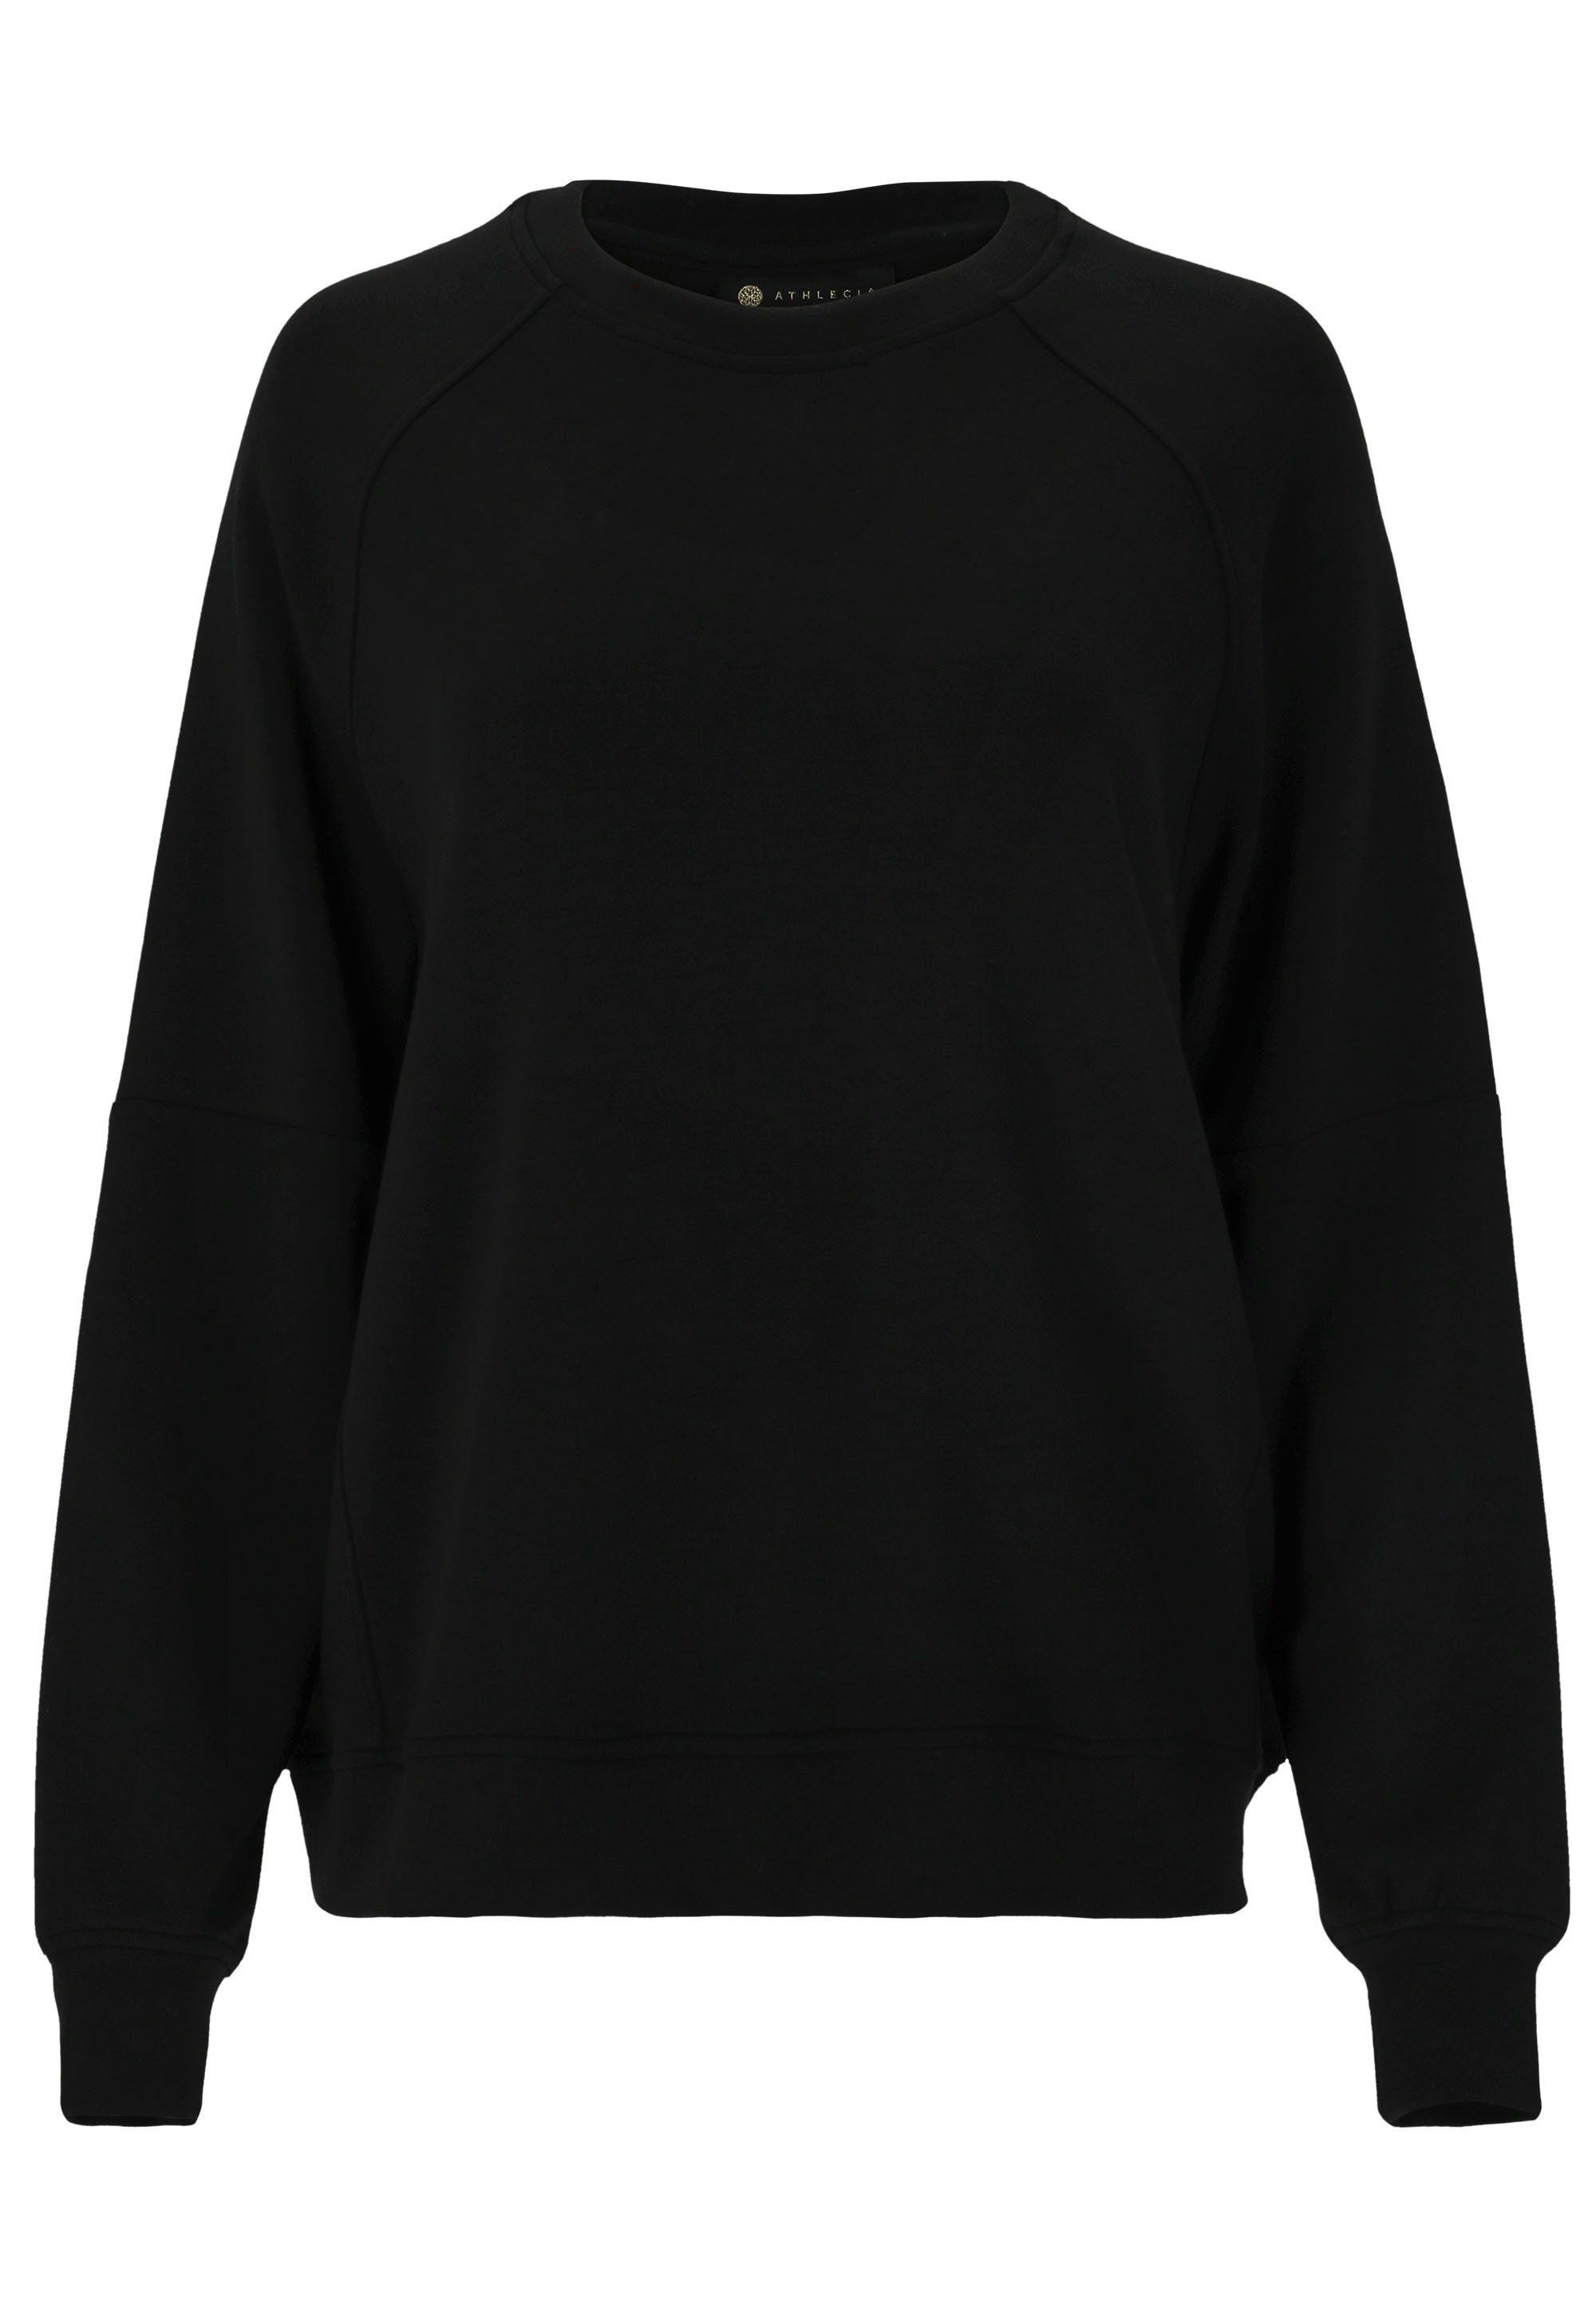 schwarz weichem Sweatshirt Material Jacey aus extra ATHLECIA